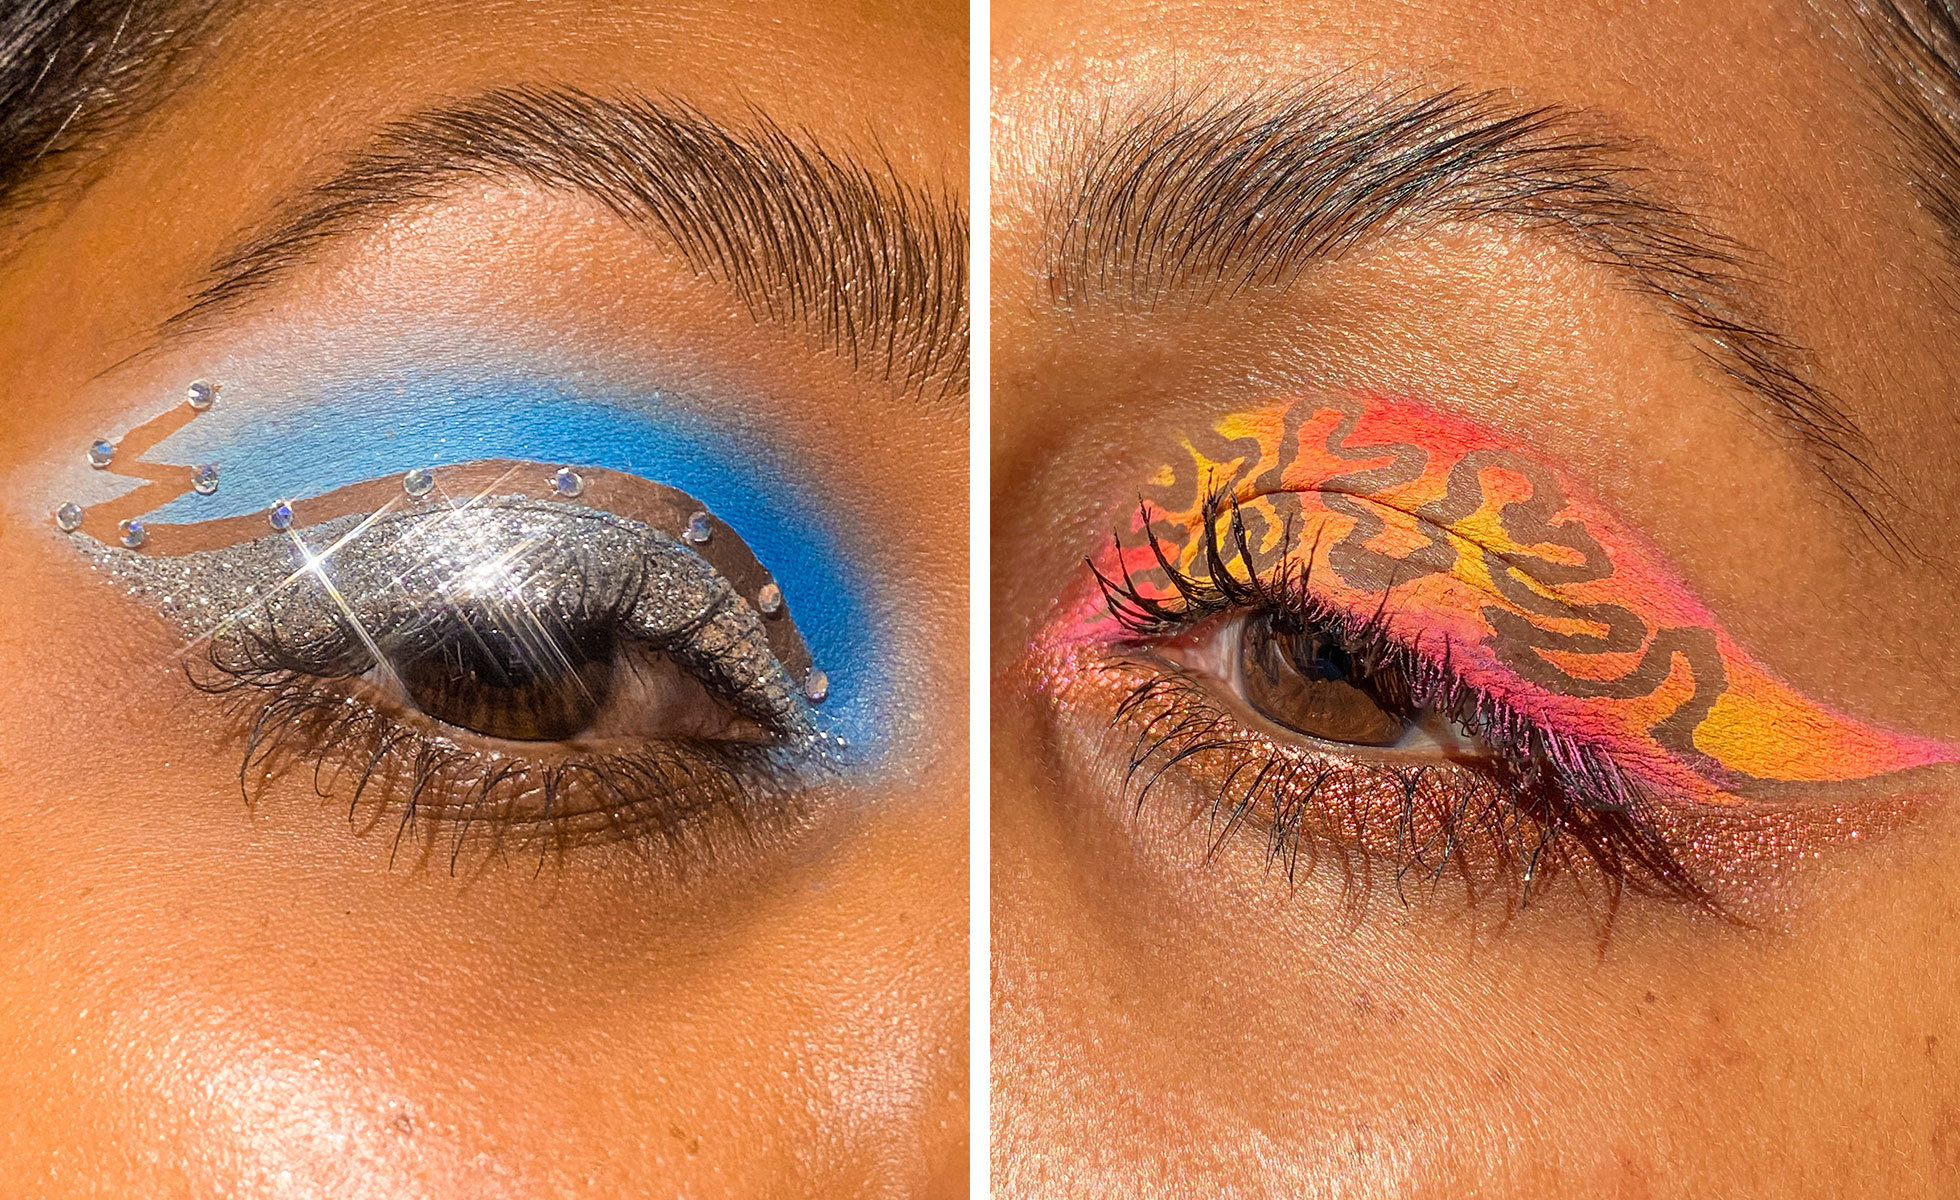 Photo: Lavanya Wiles | “Peel Reveal” eye makeup looks